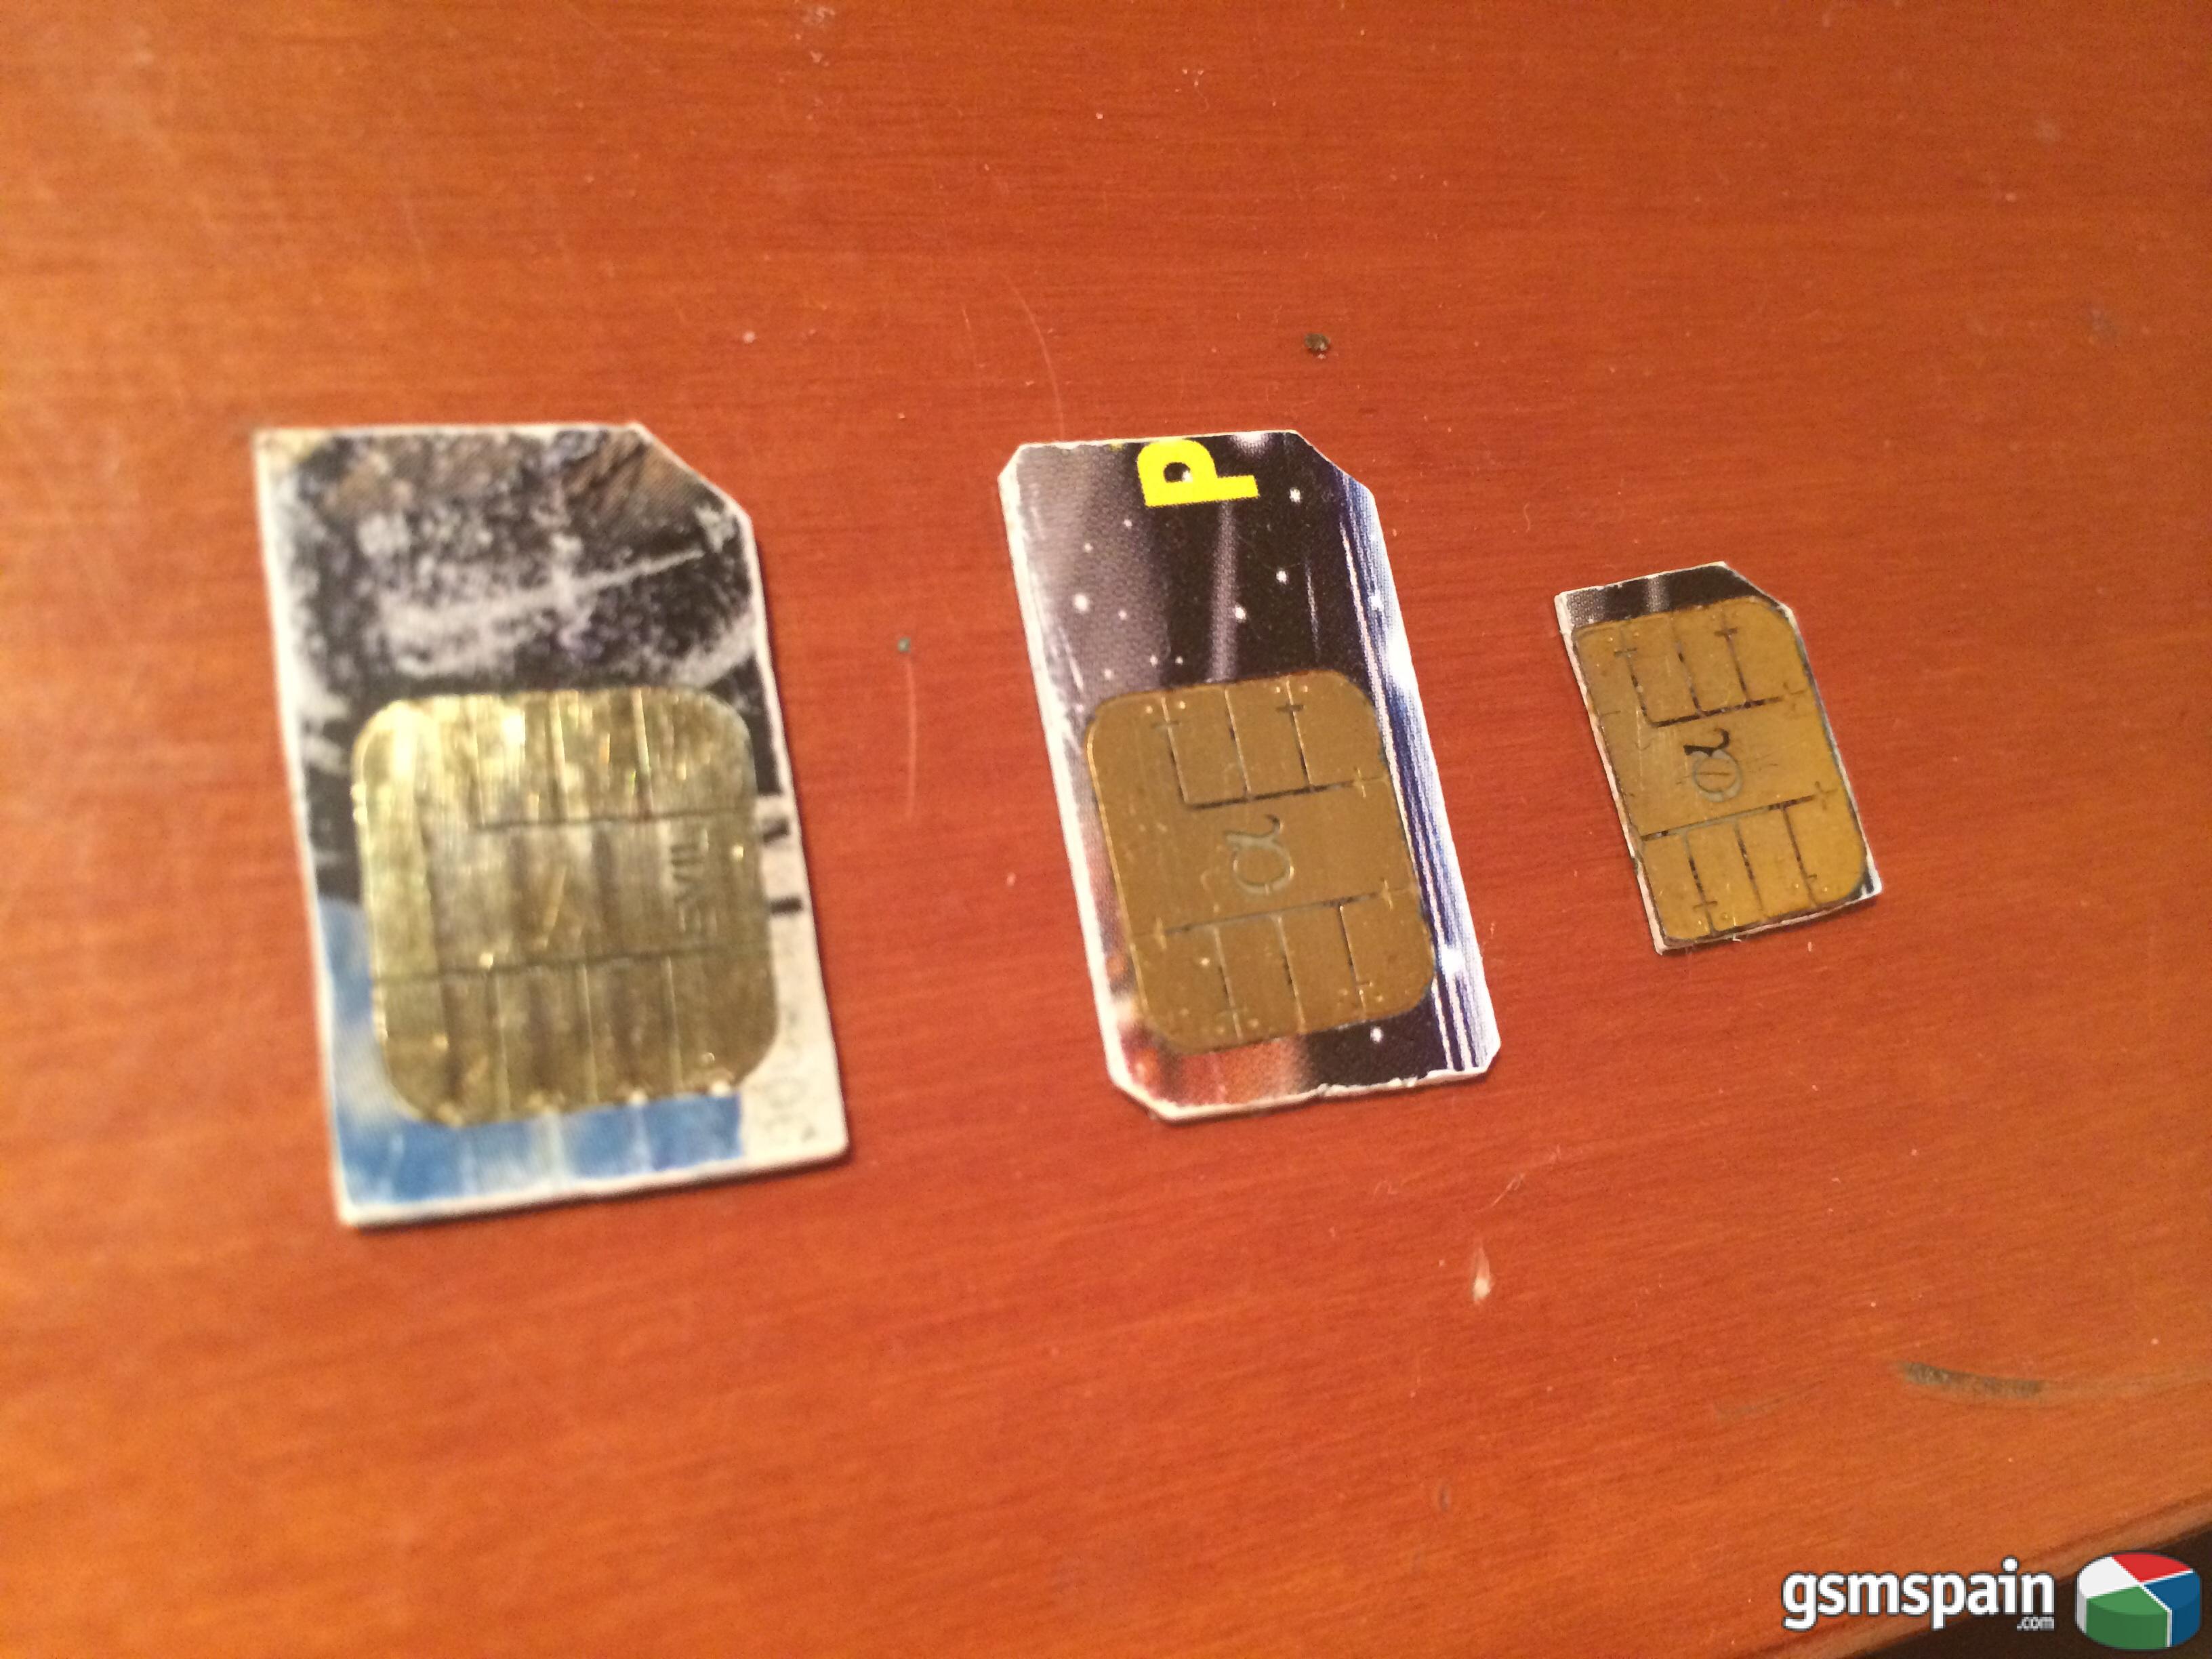 [VENDO] 3 tarjetas sim Greencard (2 normales y una microsim)